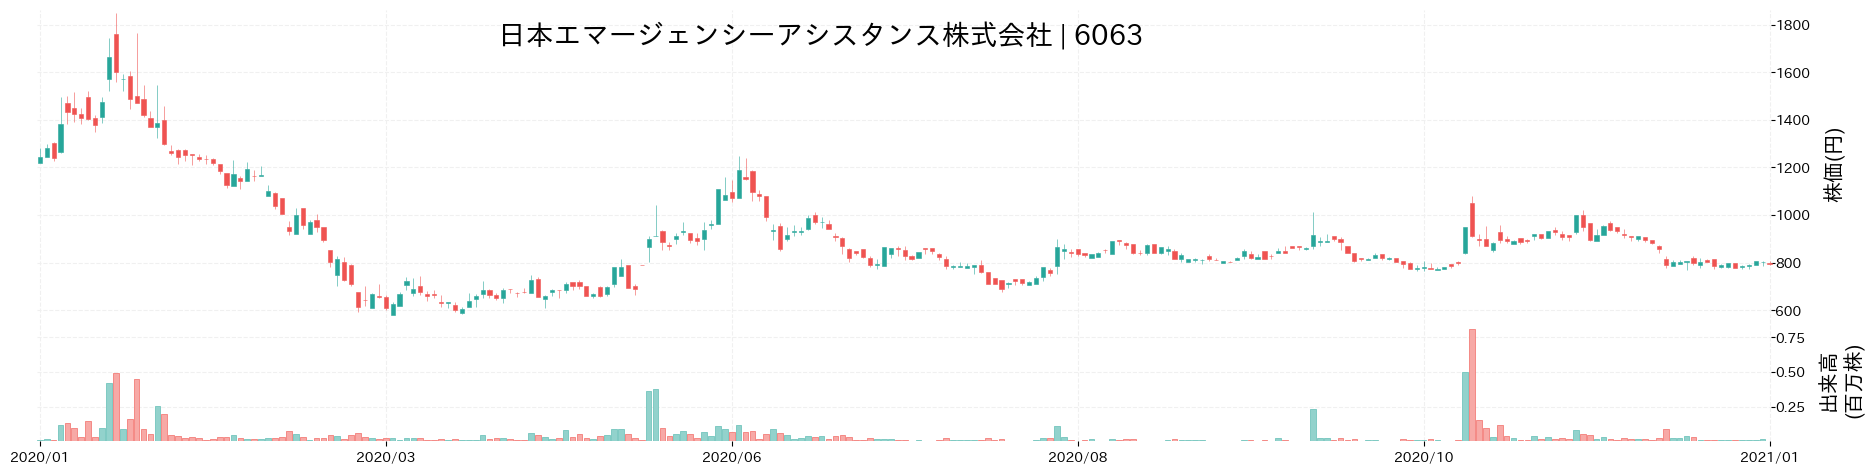 日本エマージェンシーアシスタンスの株価推移(2020)